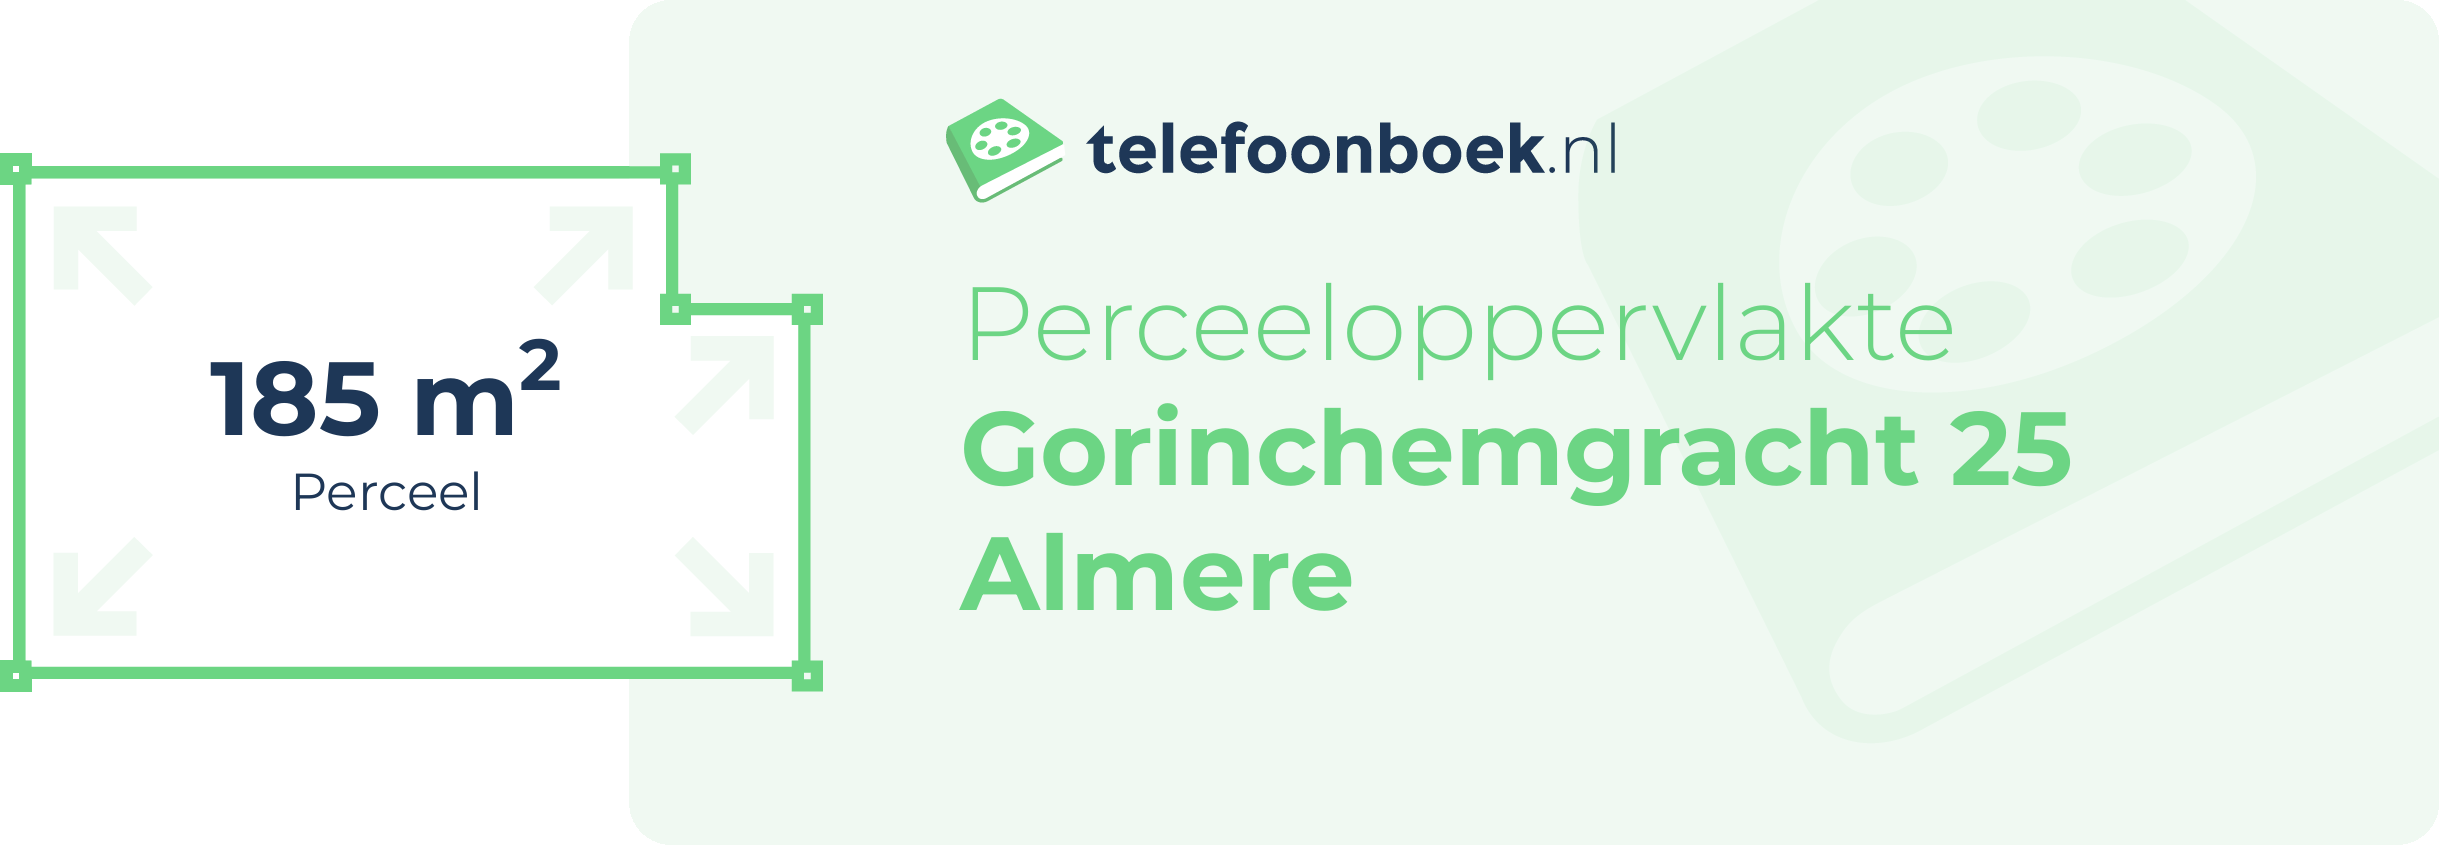 Perceeloppervlakte Gorinchemgracht 25 Almere